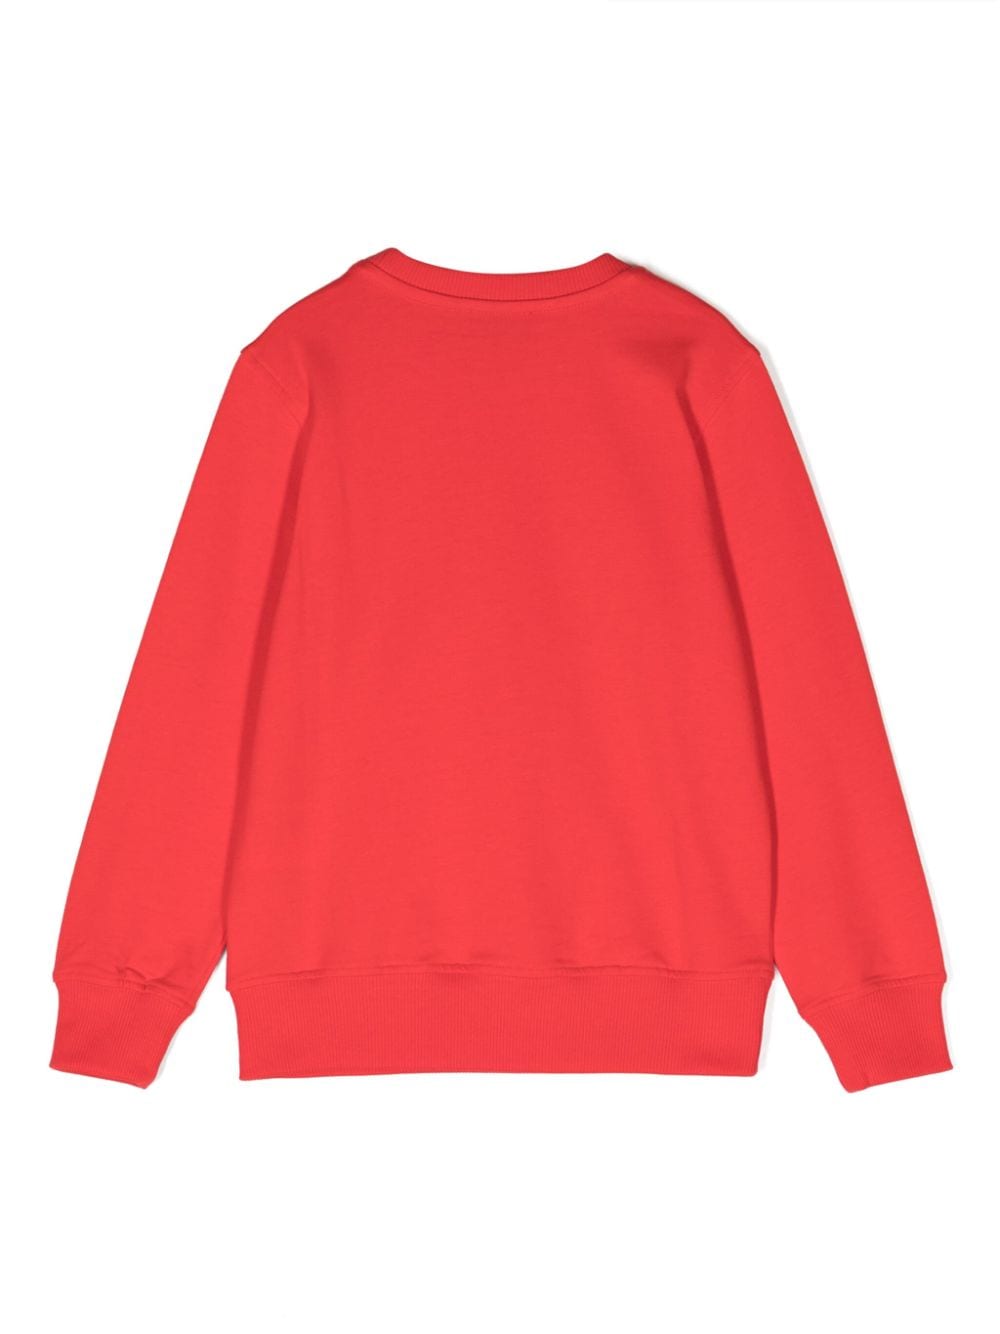 Red children's sweatshirt with logo